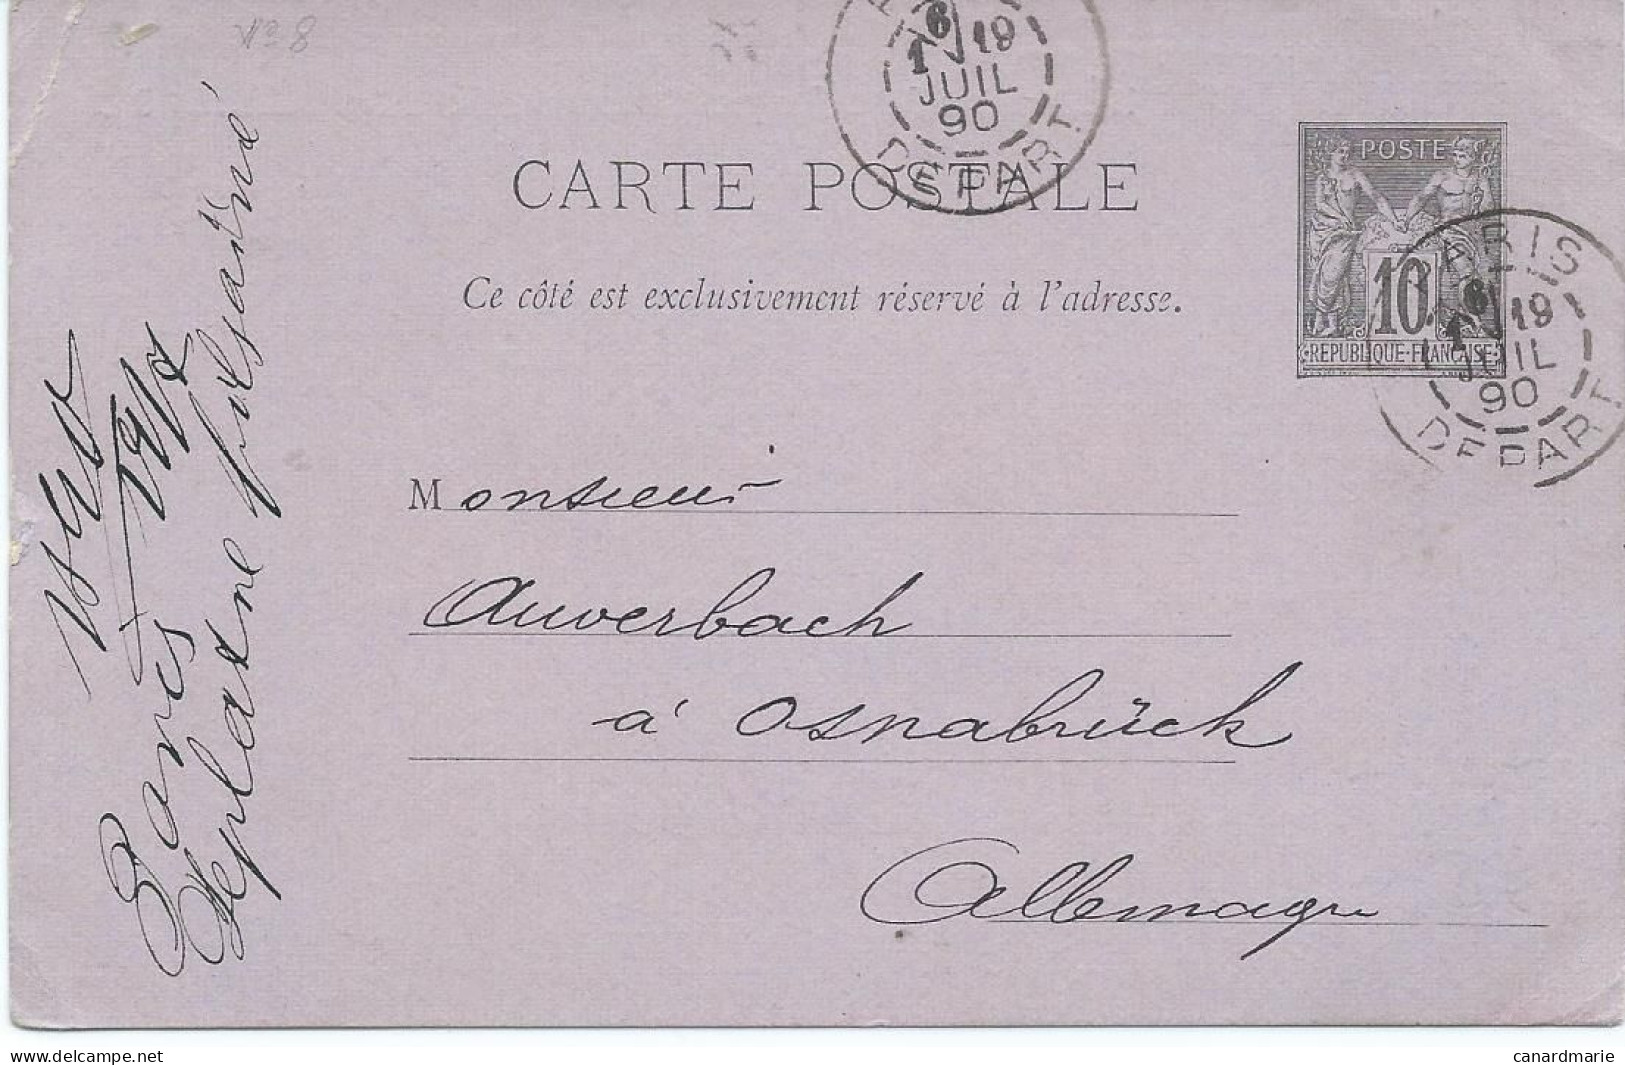 CARTE POSTALE 10 CT SAGE 1890 AVEC REPIQUAGE LEPLATRE FILS AINE PARIS - Cartes Postales Repiquages (avant 1995)